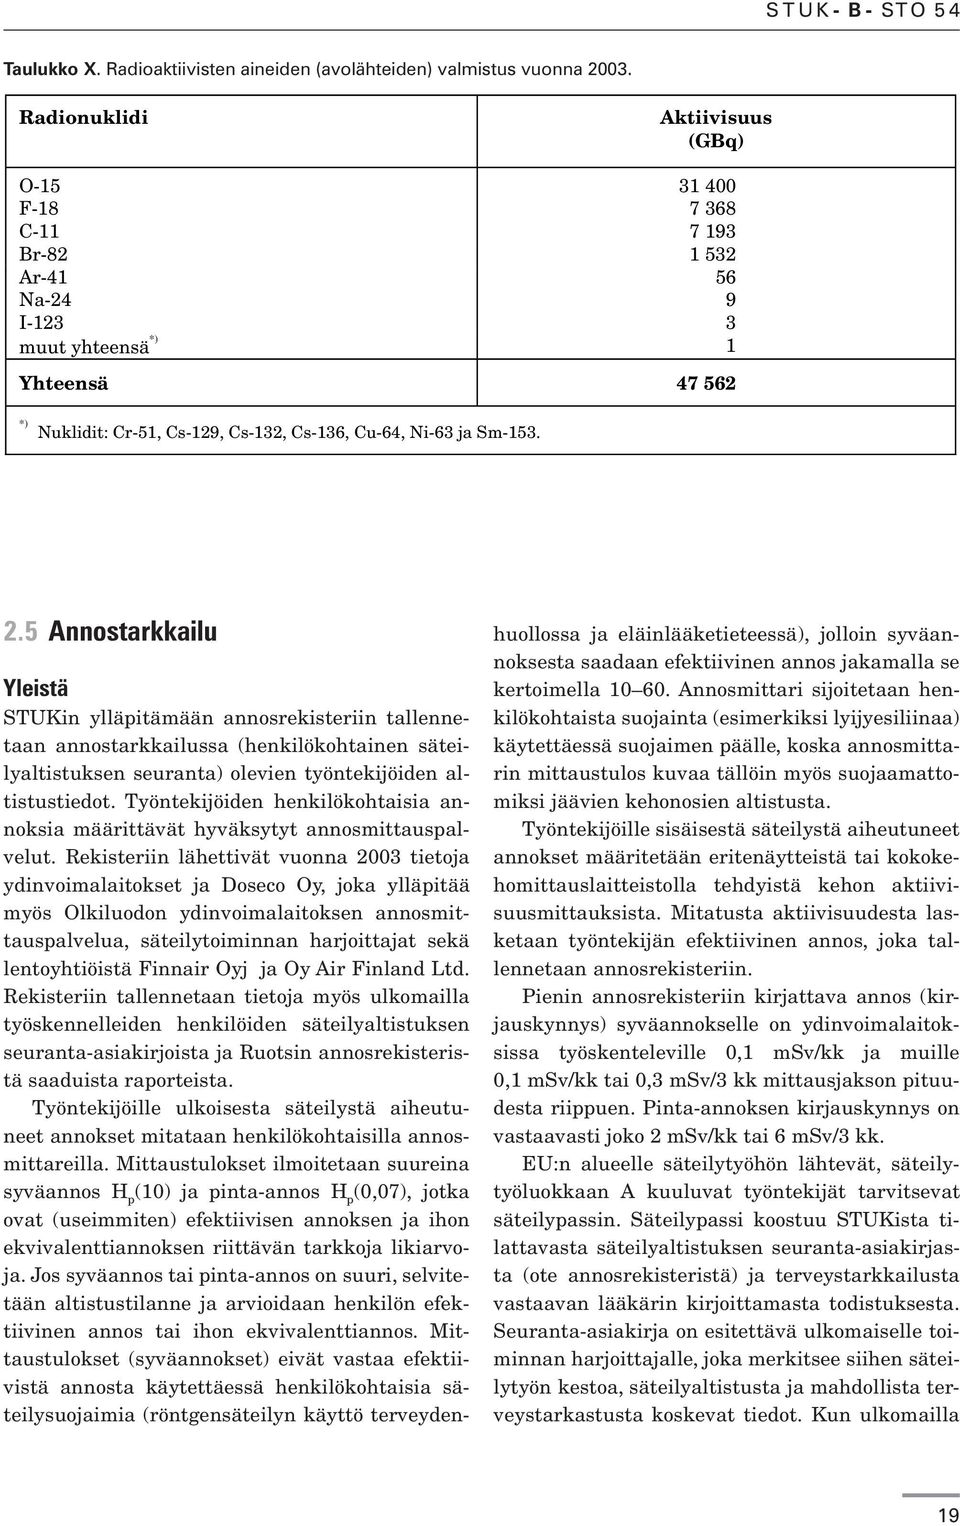 Sm-153. 2.5 Annostarkkailu Yleistä STUKin ylläpitämään annosrekisteriin tallennetaan annostarkkailussa (henkilökohtainen säteilyaltistuksen seuranta) olevien työntekijöiden altistustiedot.